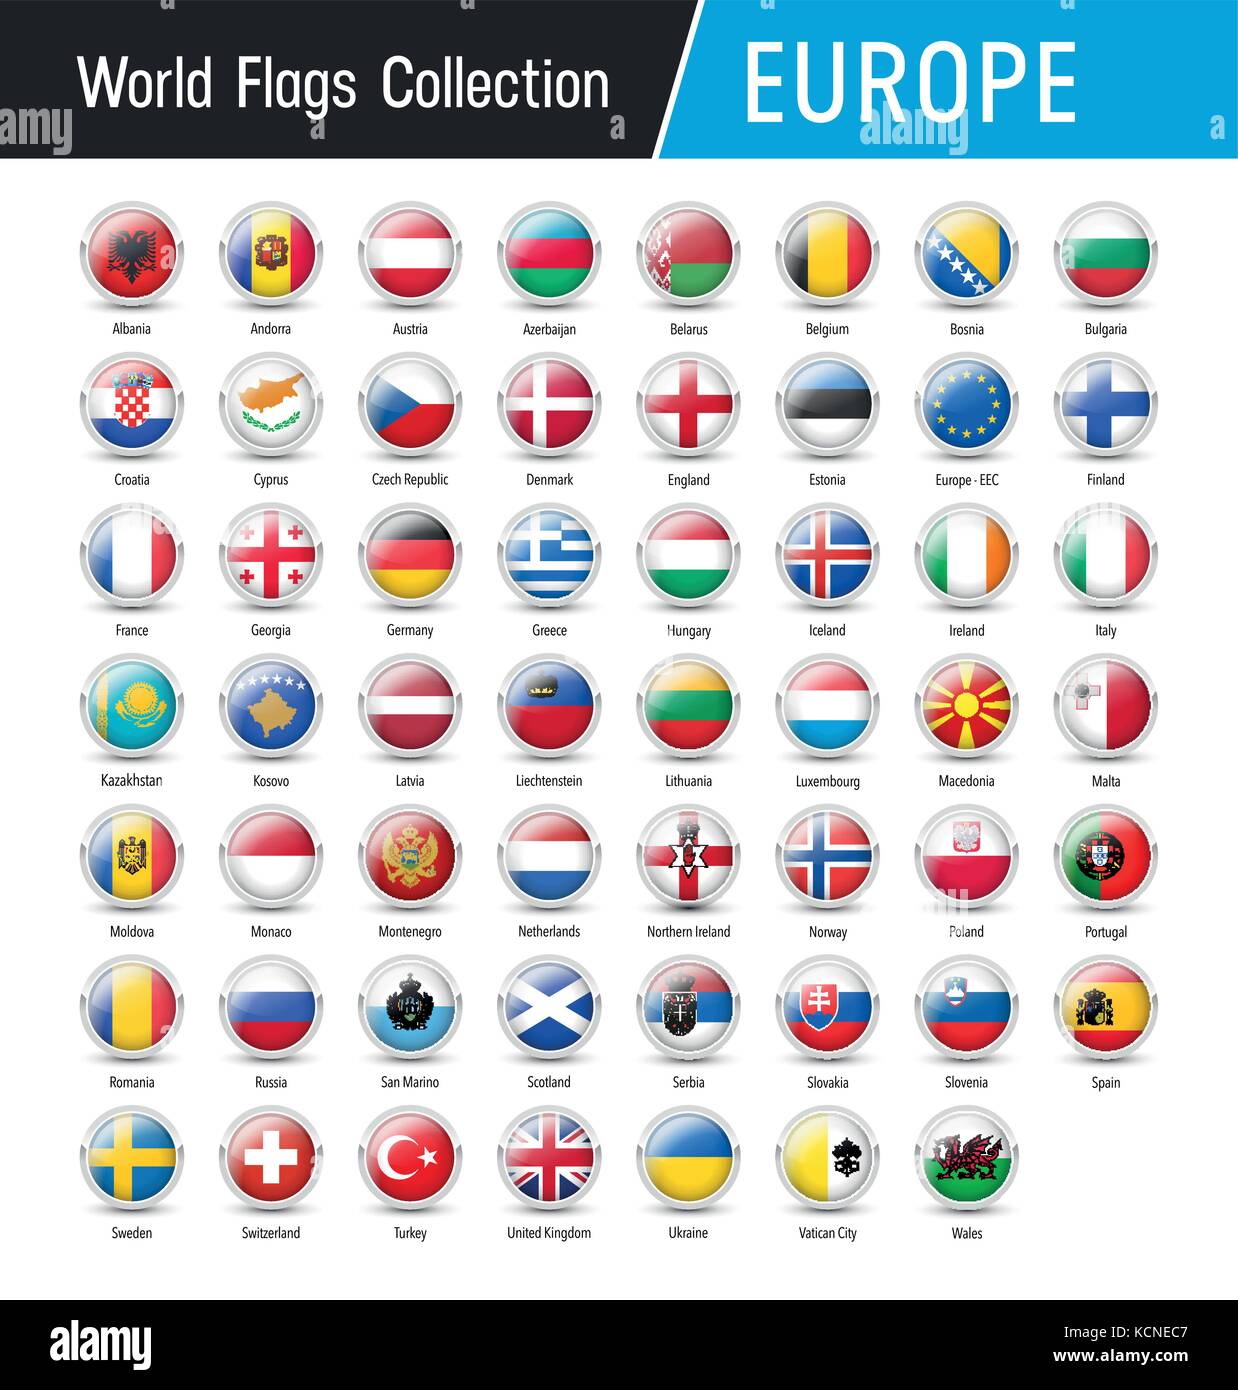 Flaggen von Europa, runde Symbole - Vektor Welt Fahnen Sammlung Stock Vektor